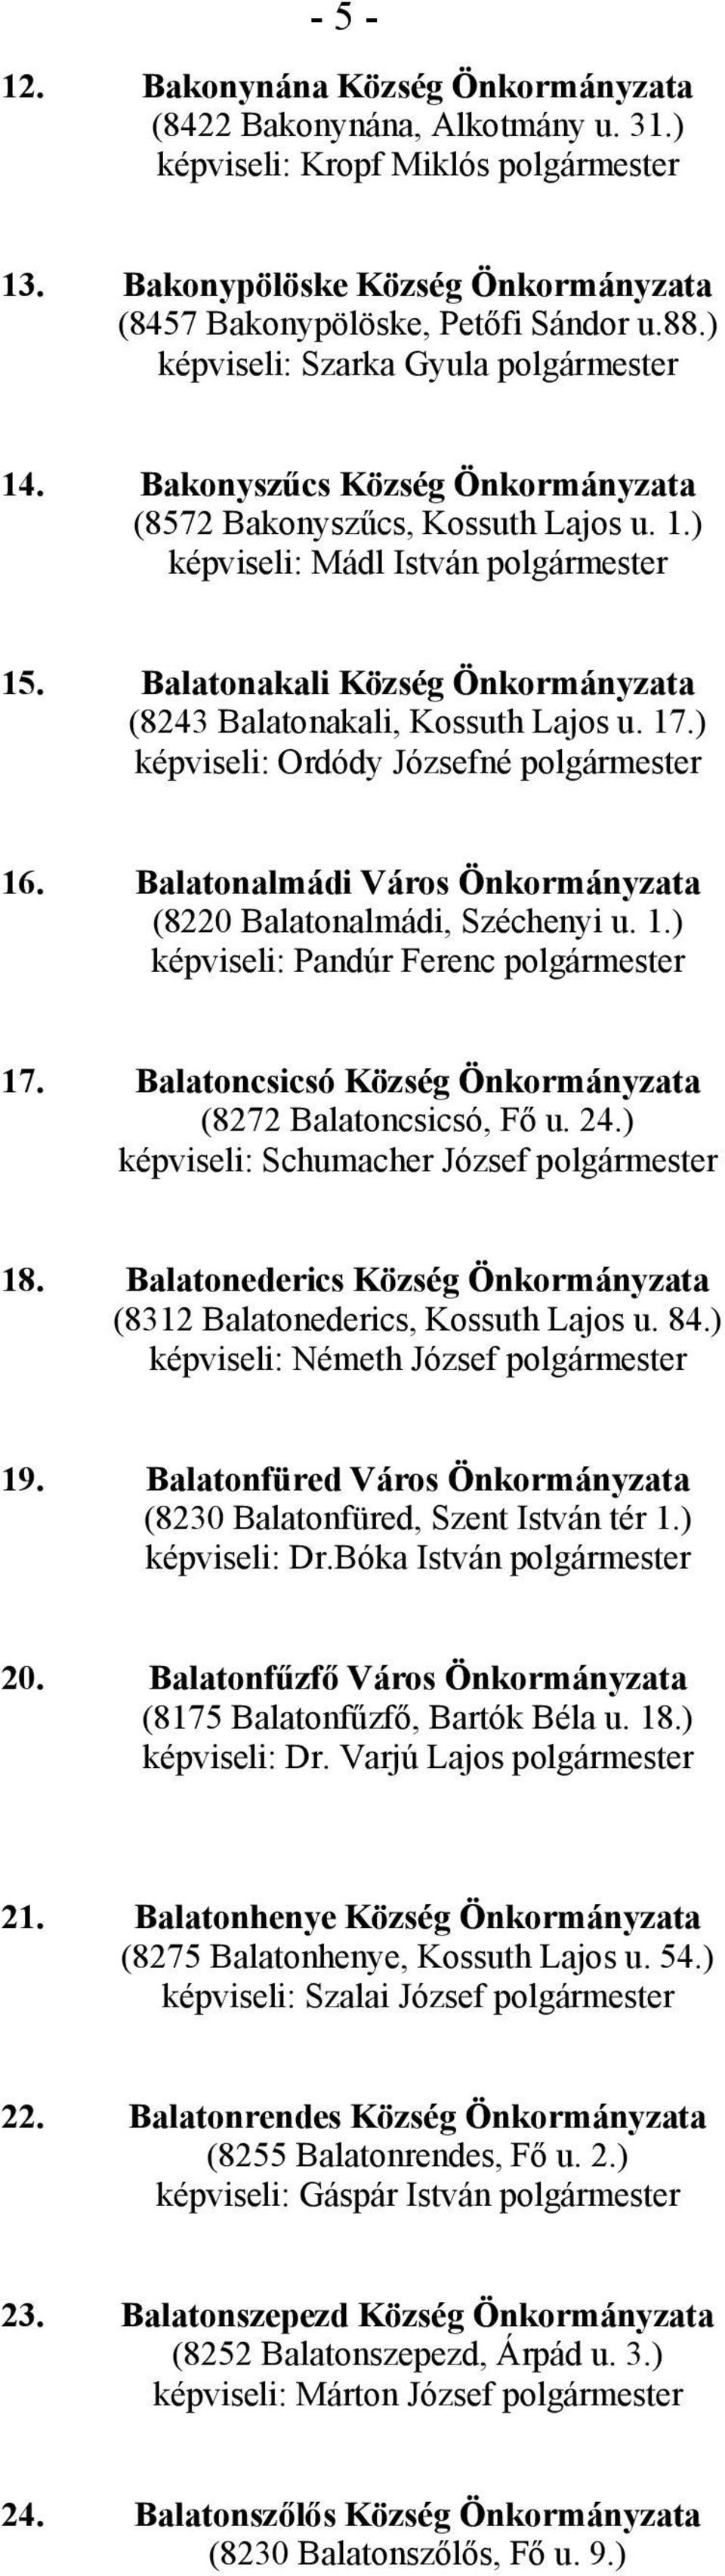 Balatonakali Község Önkormányzata (8243 Balatonakali, Kossuth Lajos u. 17.) képviseli: Ordódy Józsefné polgármester 16. Balatonalmádi Város Önkormányzata (8220 Balatonalmádi, Széchenyi u. 1.) képviseli: Pandúr Ferenc polgármester 17.